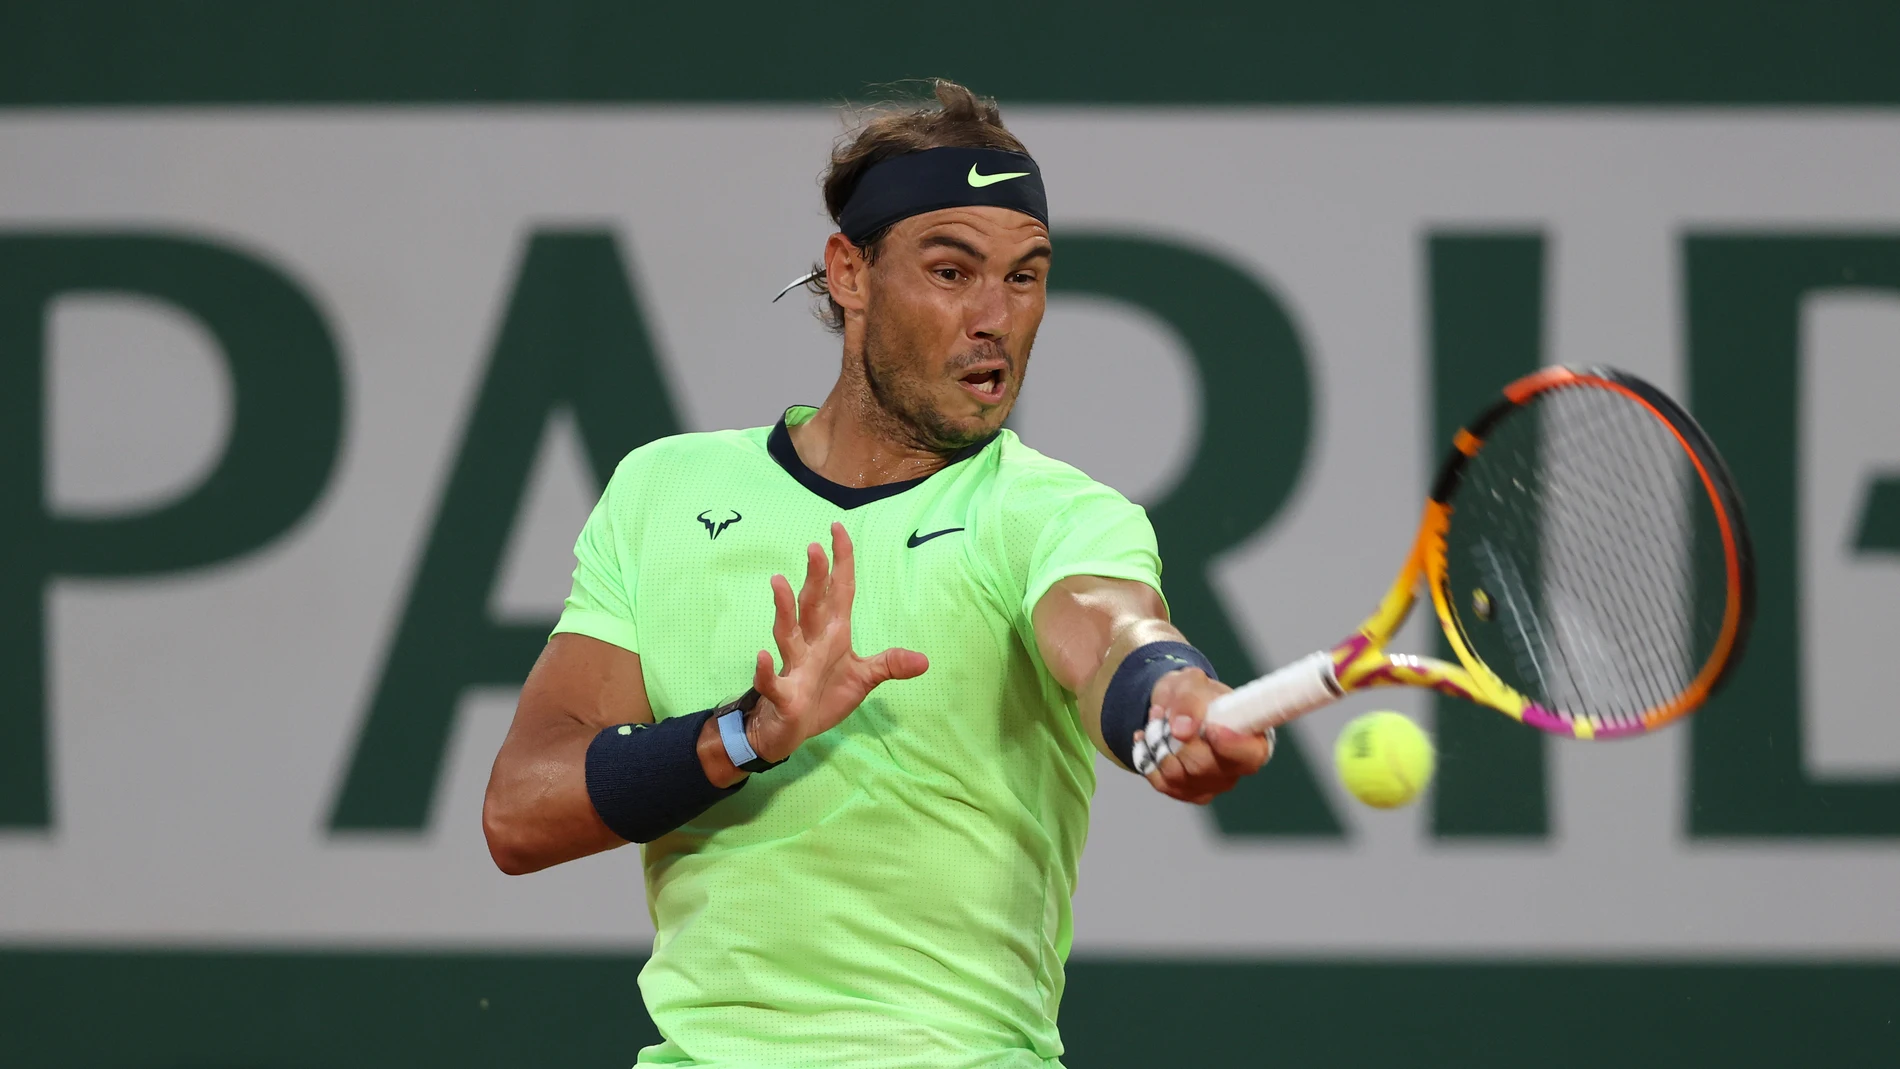 Rafa Nadal - Cameron Norrie: Horario y dónde ver el partido de tenis hoy de Roland Garros en directo